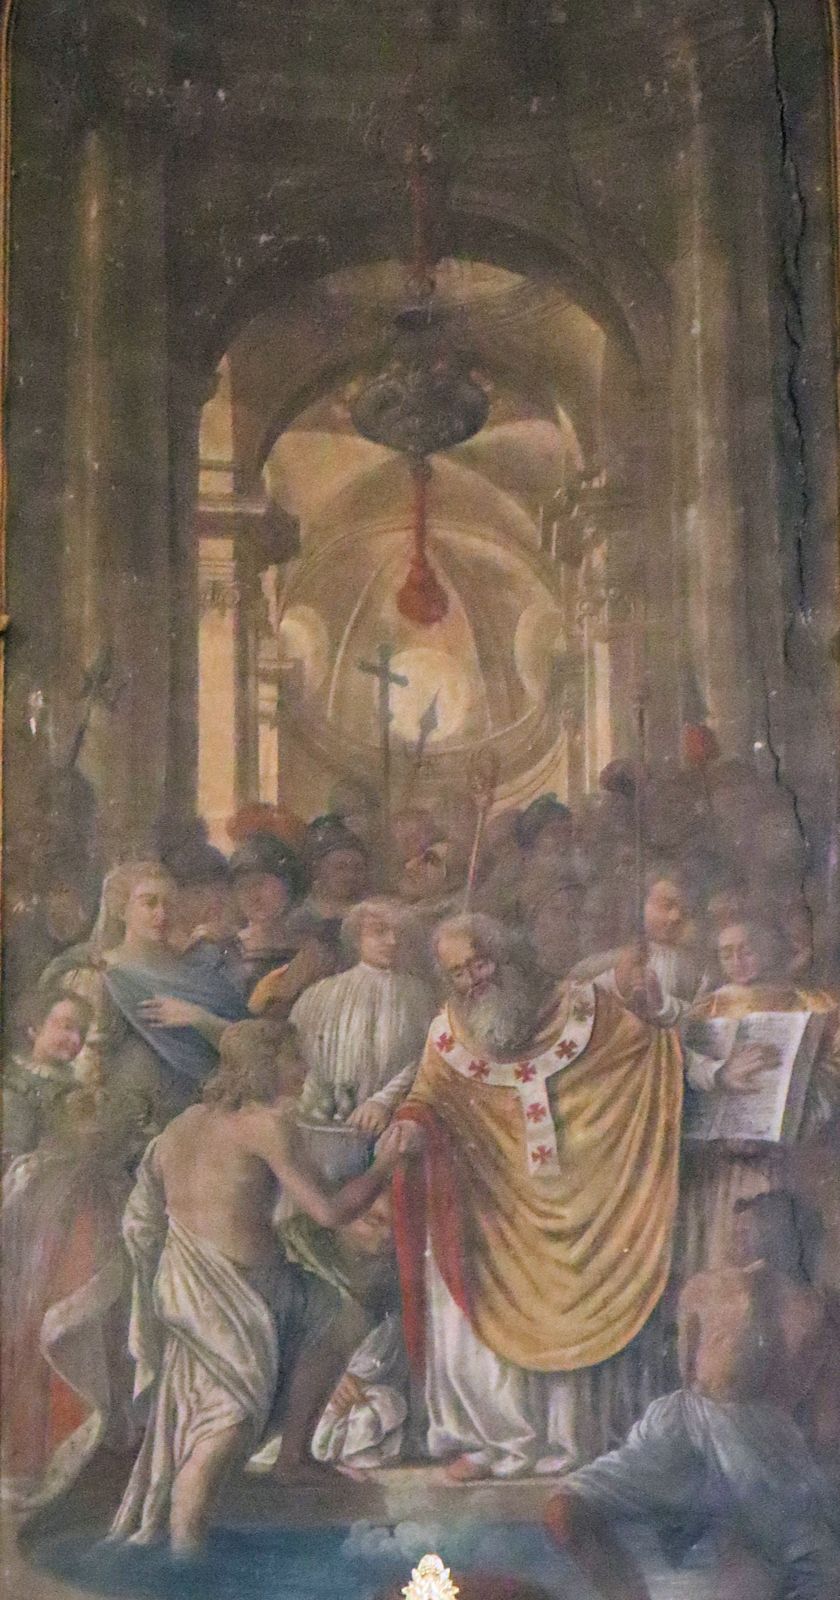 Bild in der Apsis: Remigius tauft Frankenkönig Chlodwig, in der Kirche Saint-Jacques in Lunéville